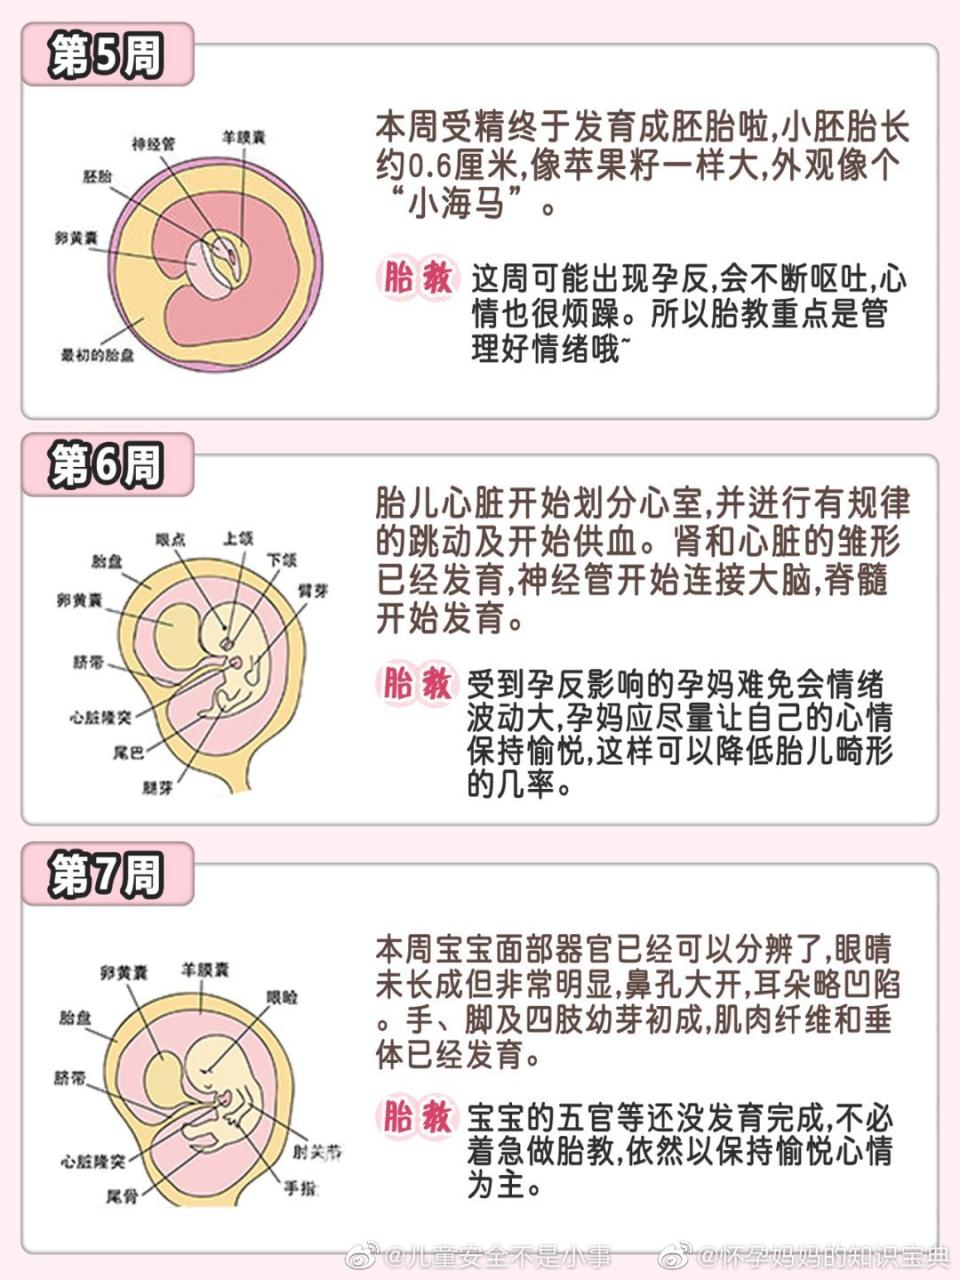 1、孕周胎心胎芽标准